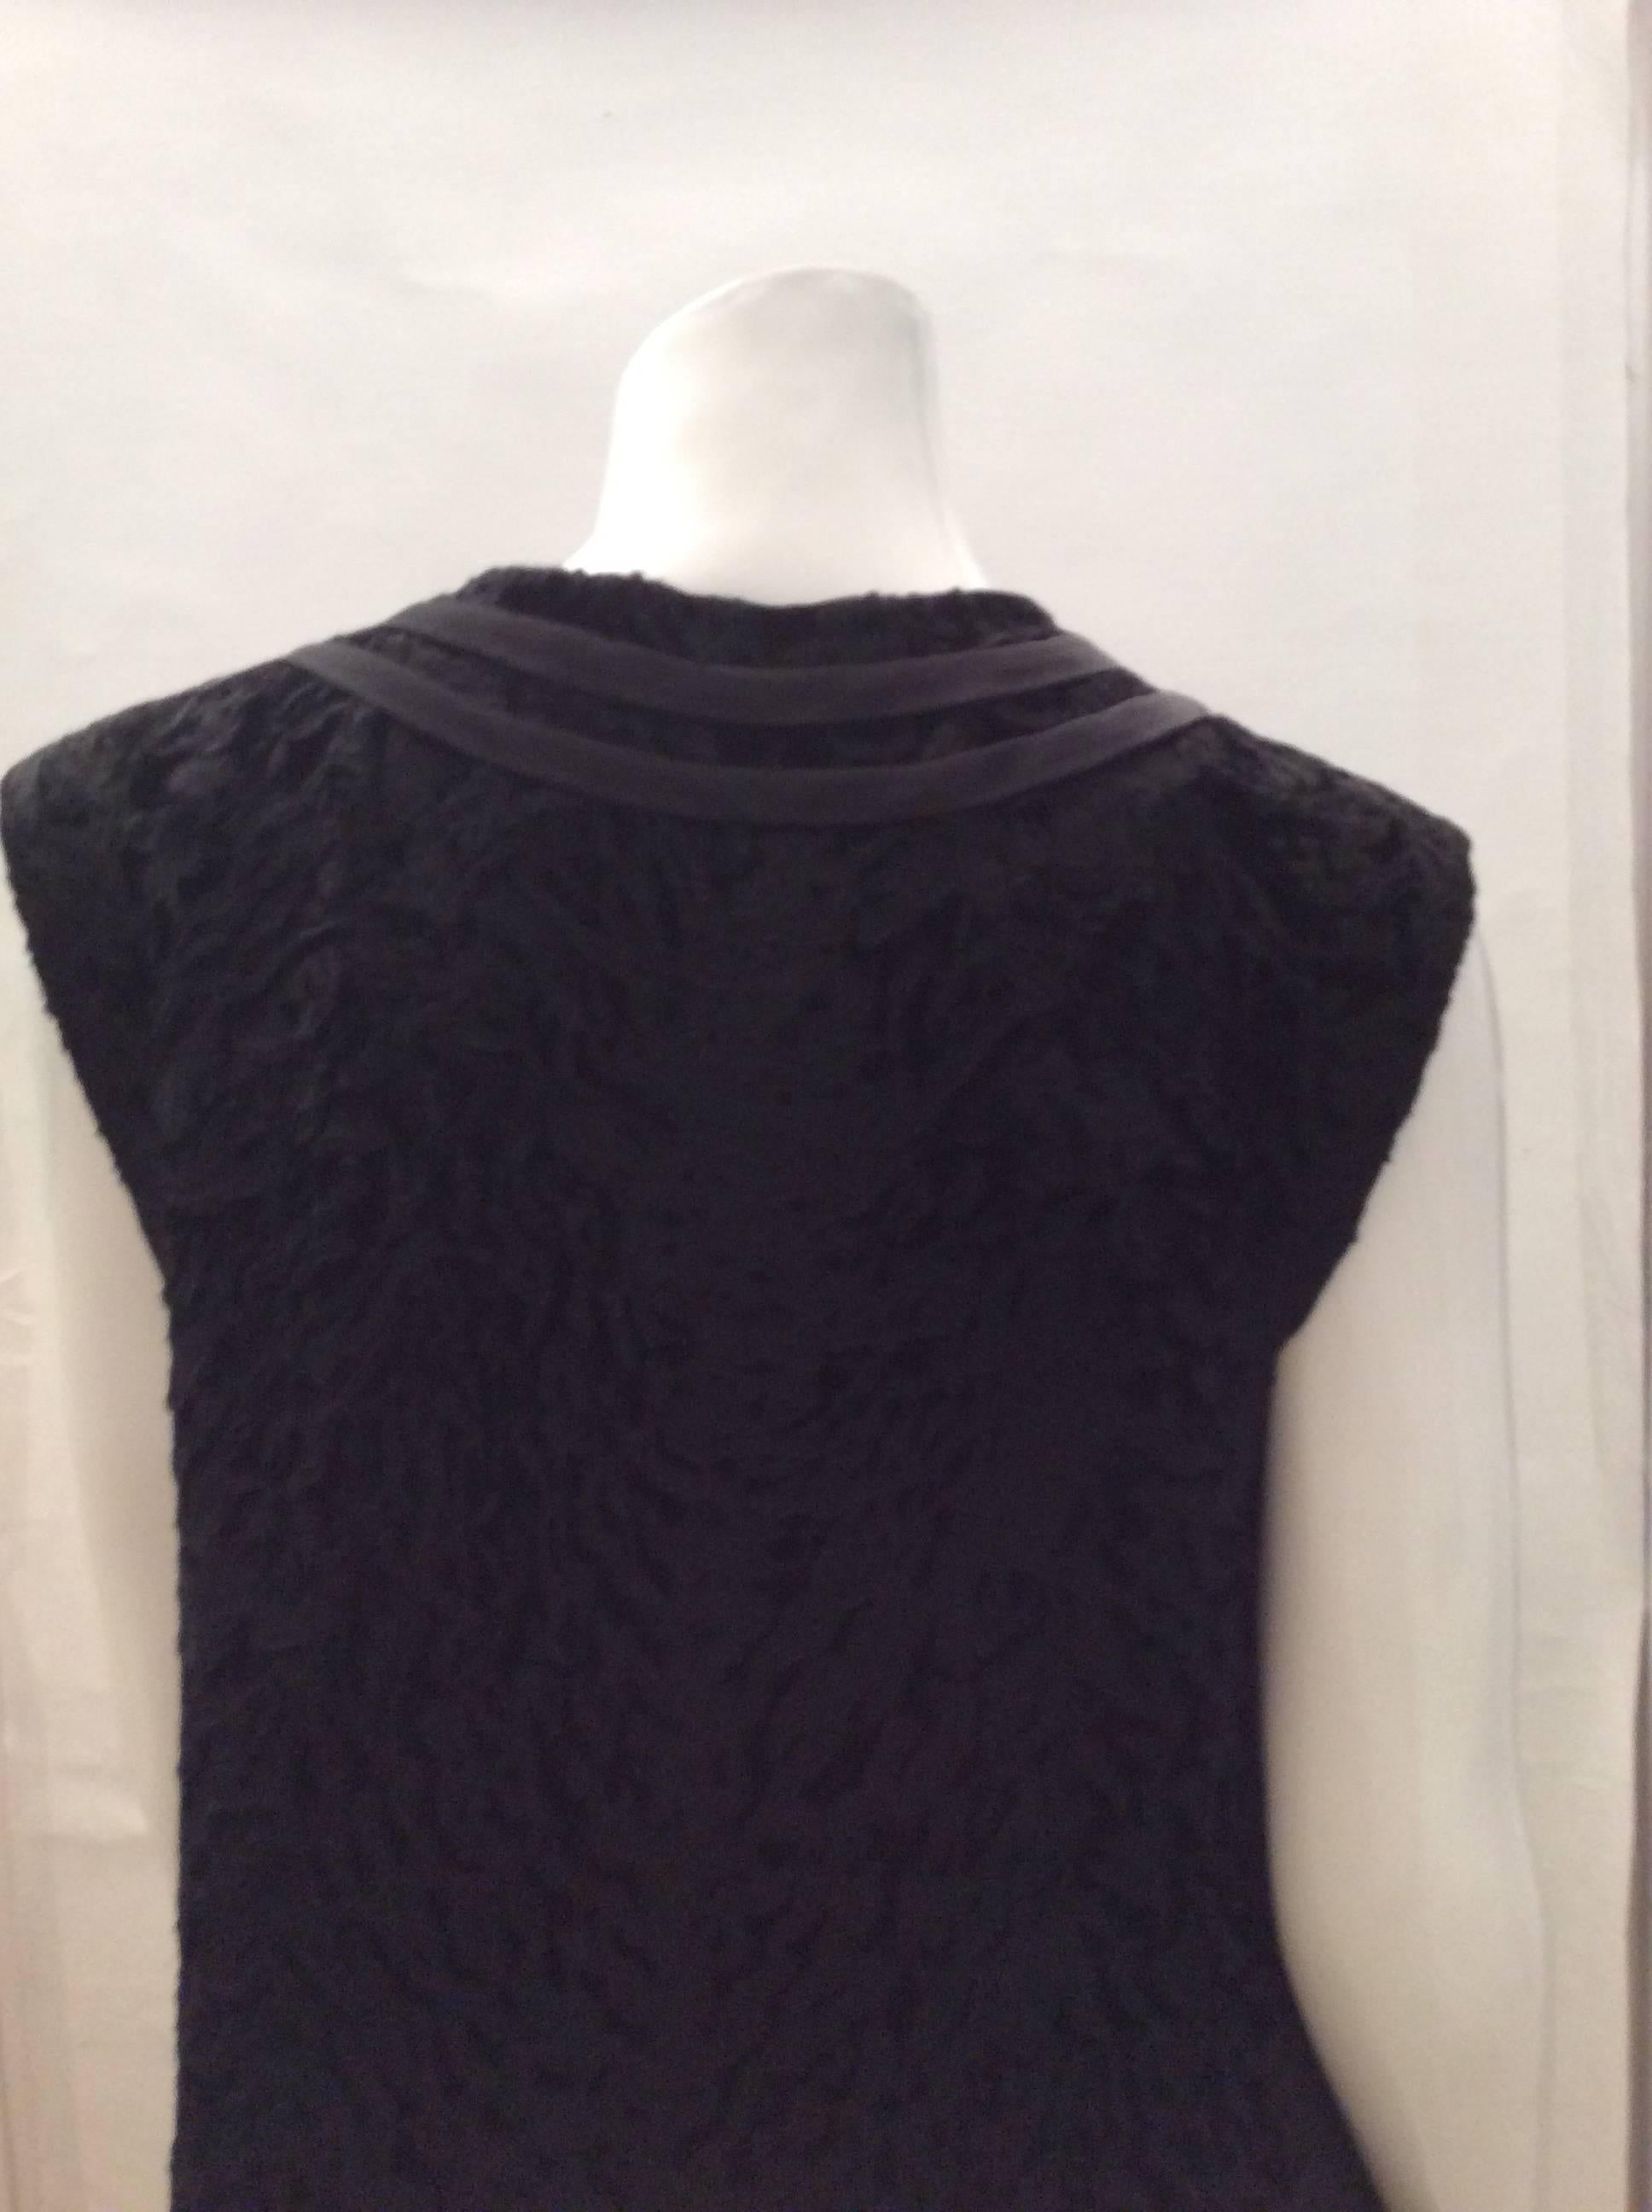 Beautiful 1960's Genuine Persian Lamb Black Dress - Rare - 8 -14 For Sale 4